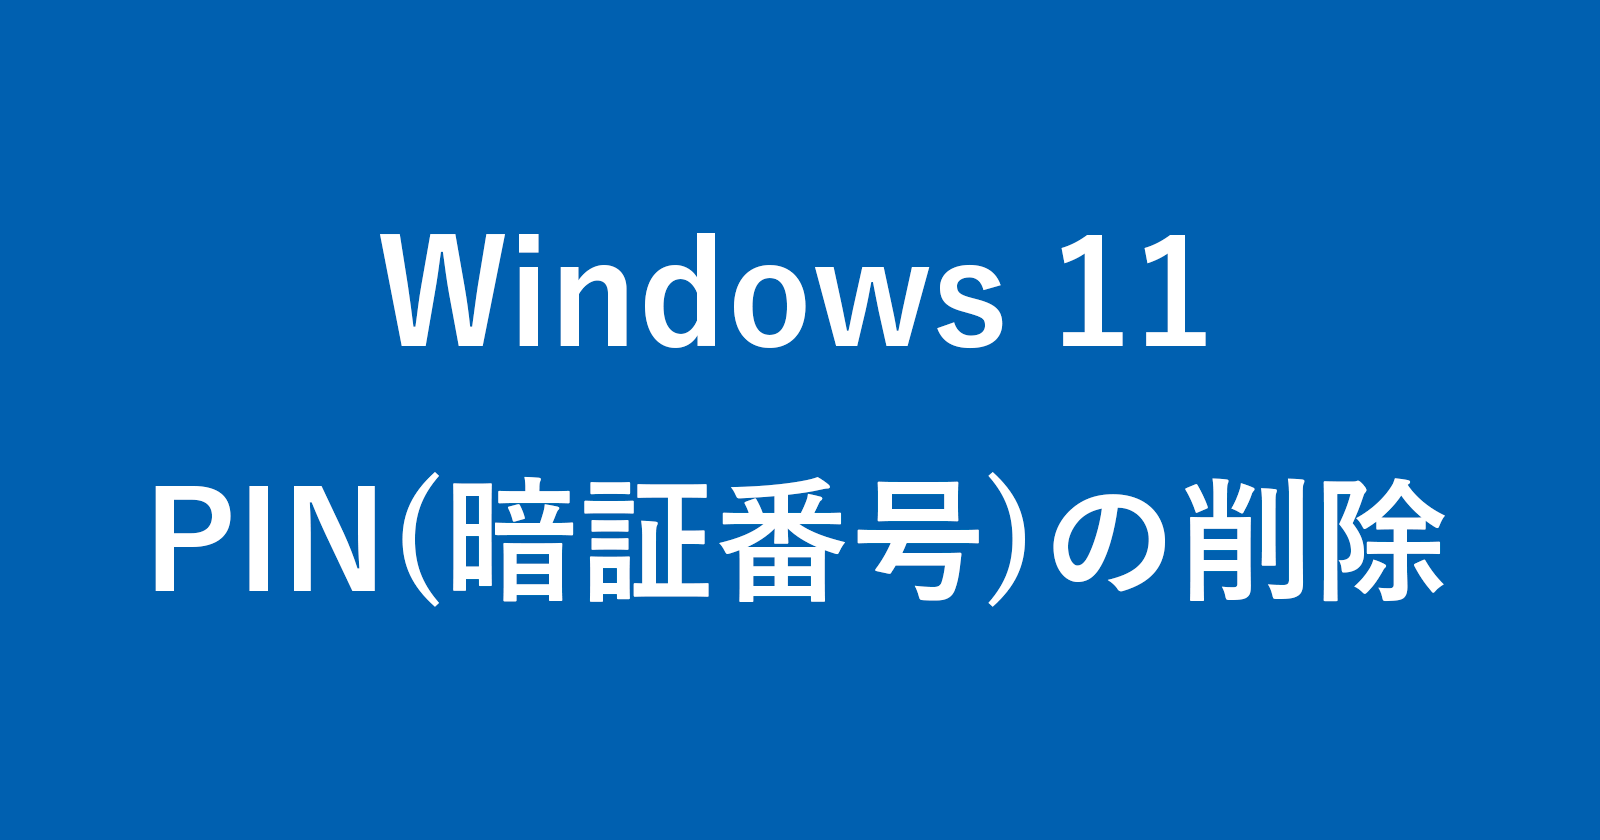 windows 11 remove pin